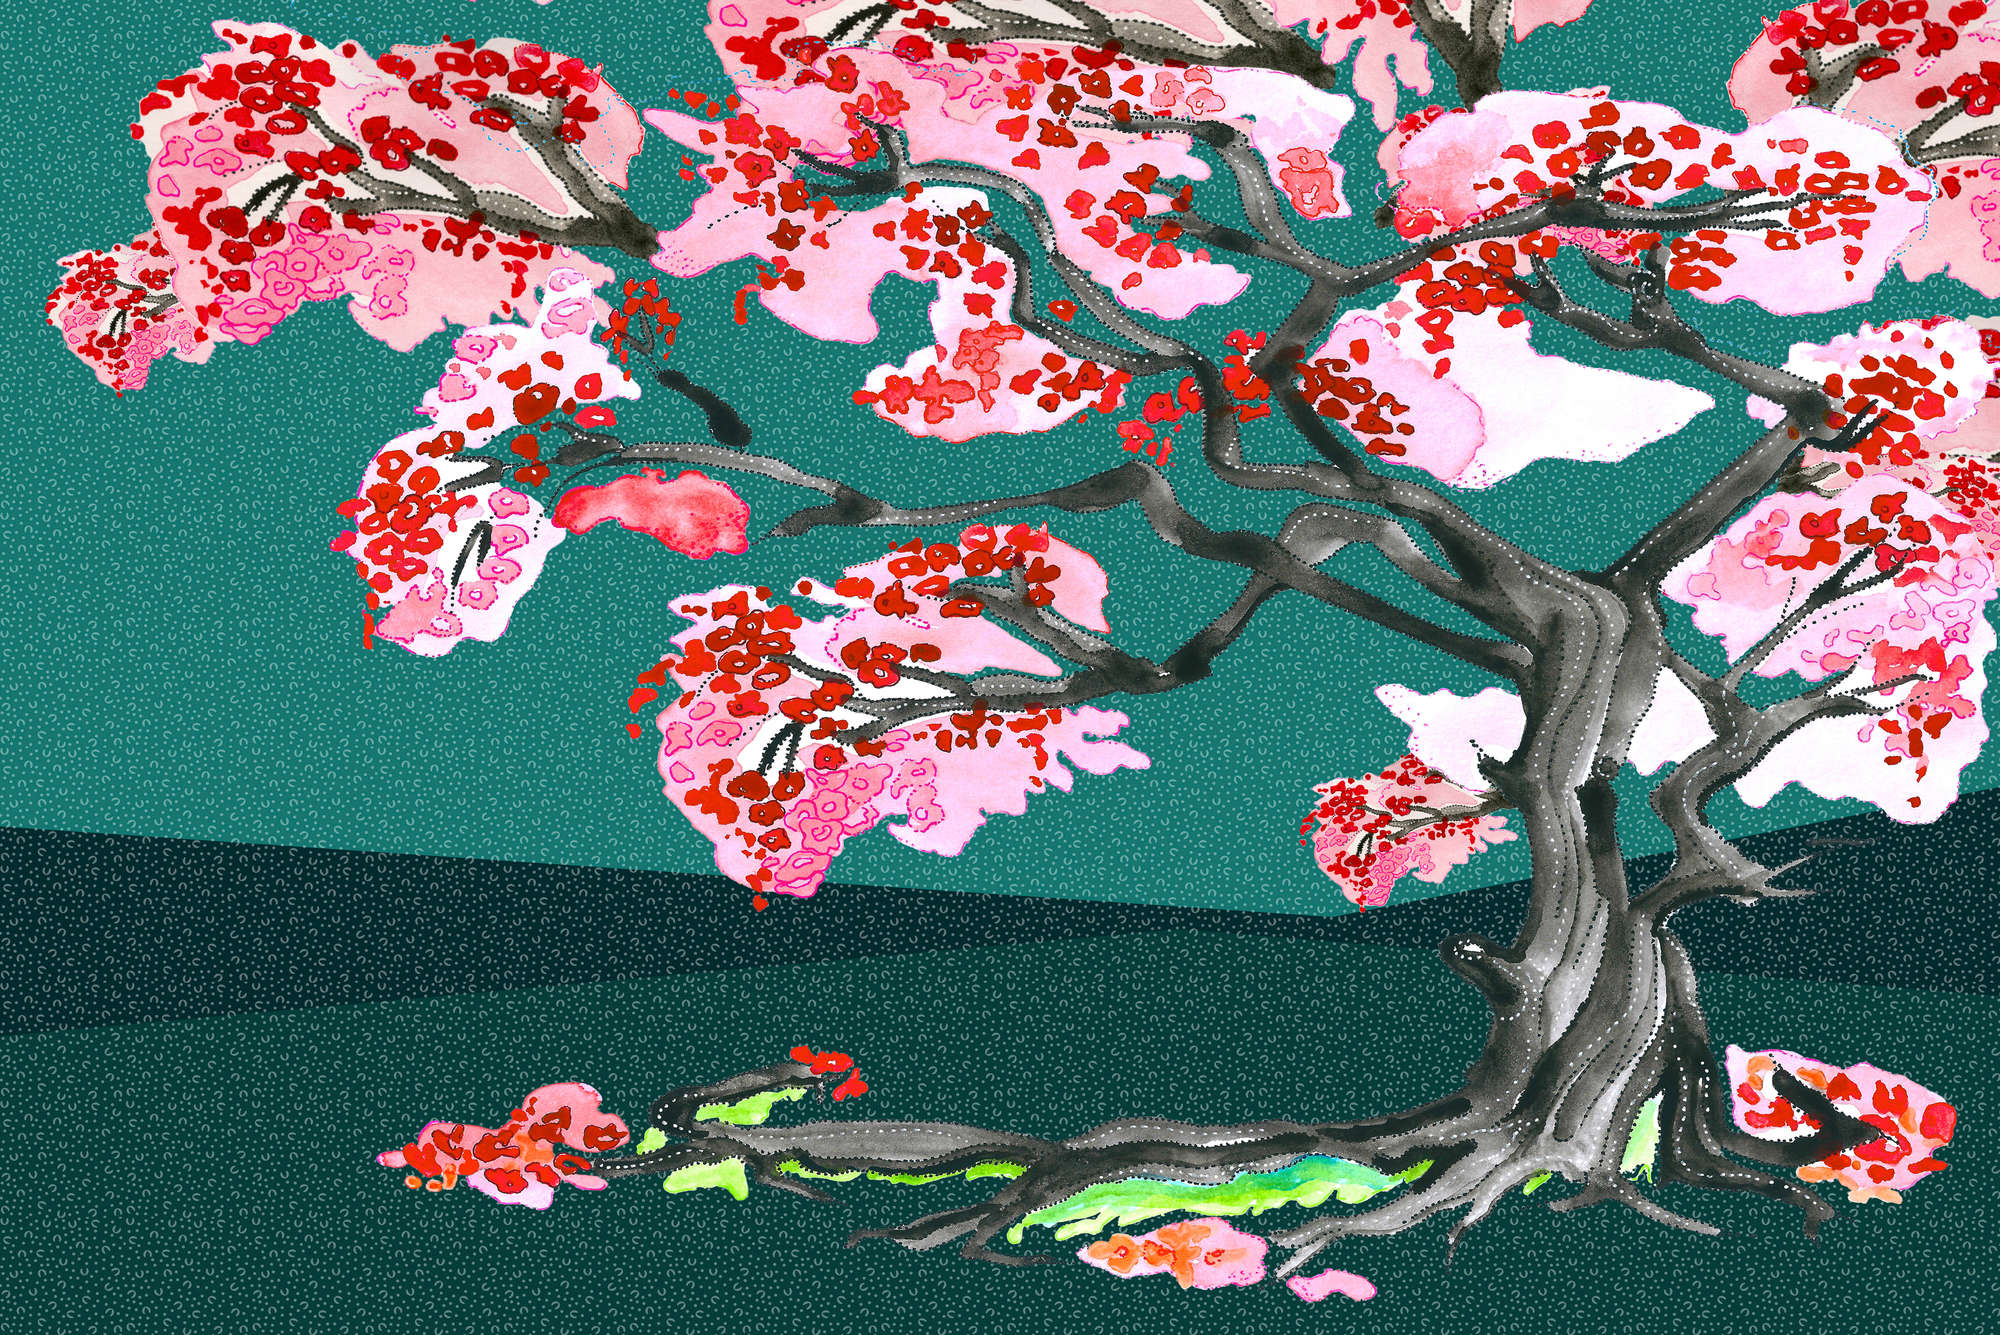             Papier peint fleurs de cerisiers style comics asiatique sur intissé structuré
        